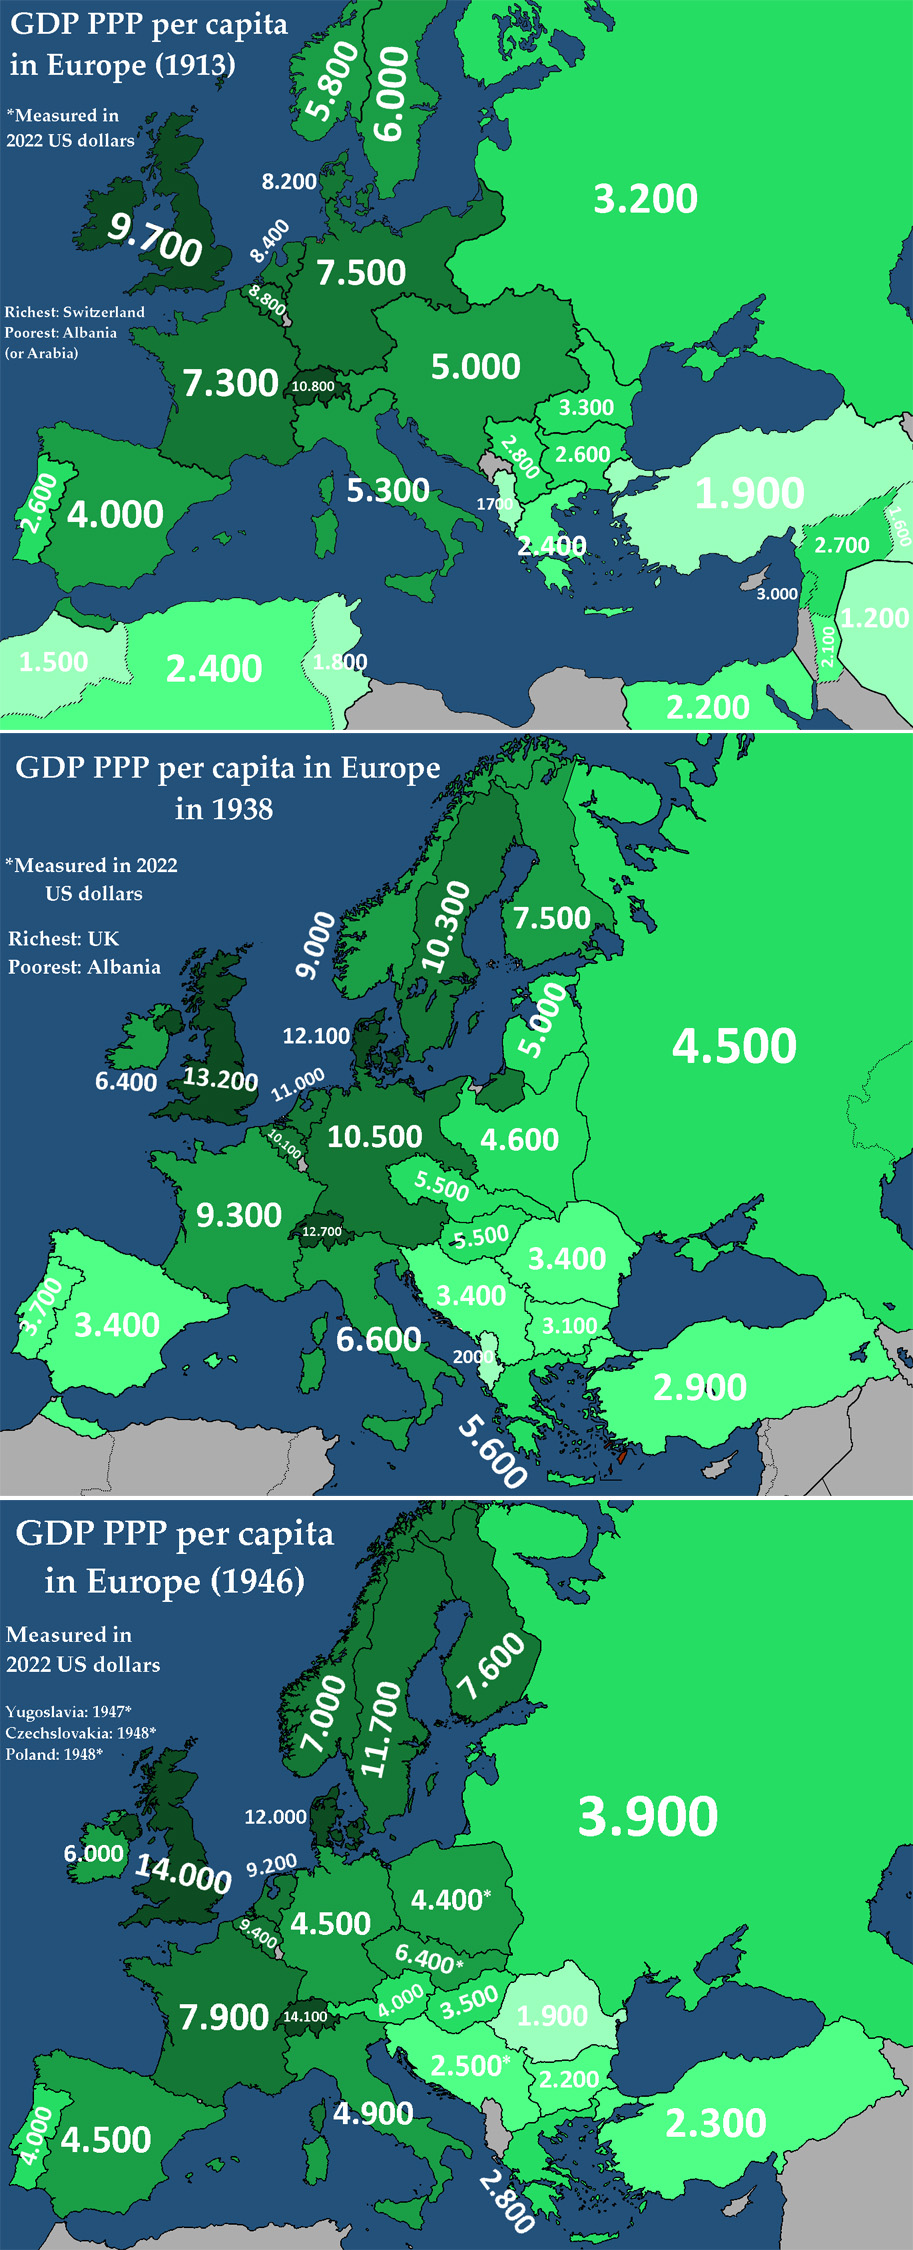 GDP PPP per capita in Europe.jpg